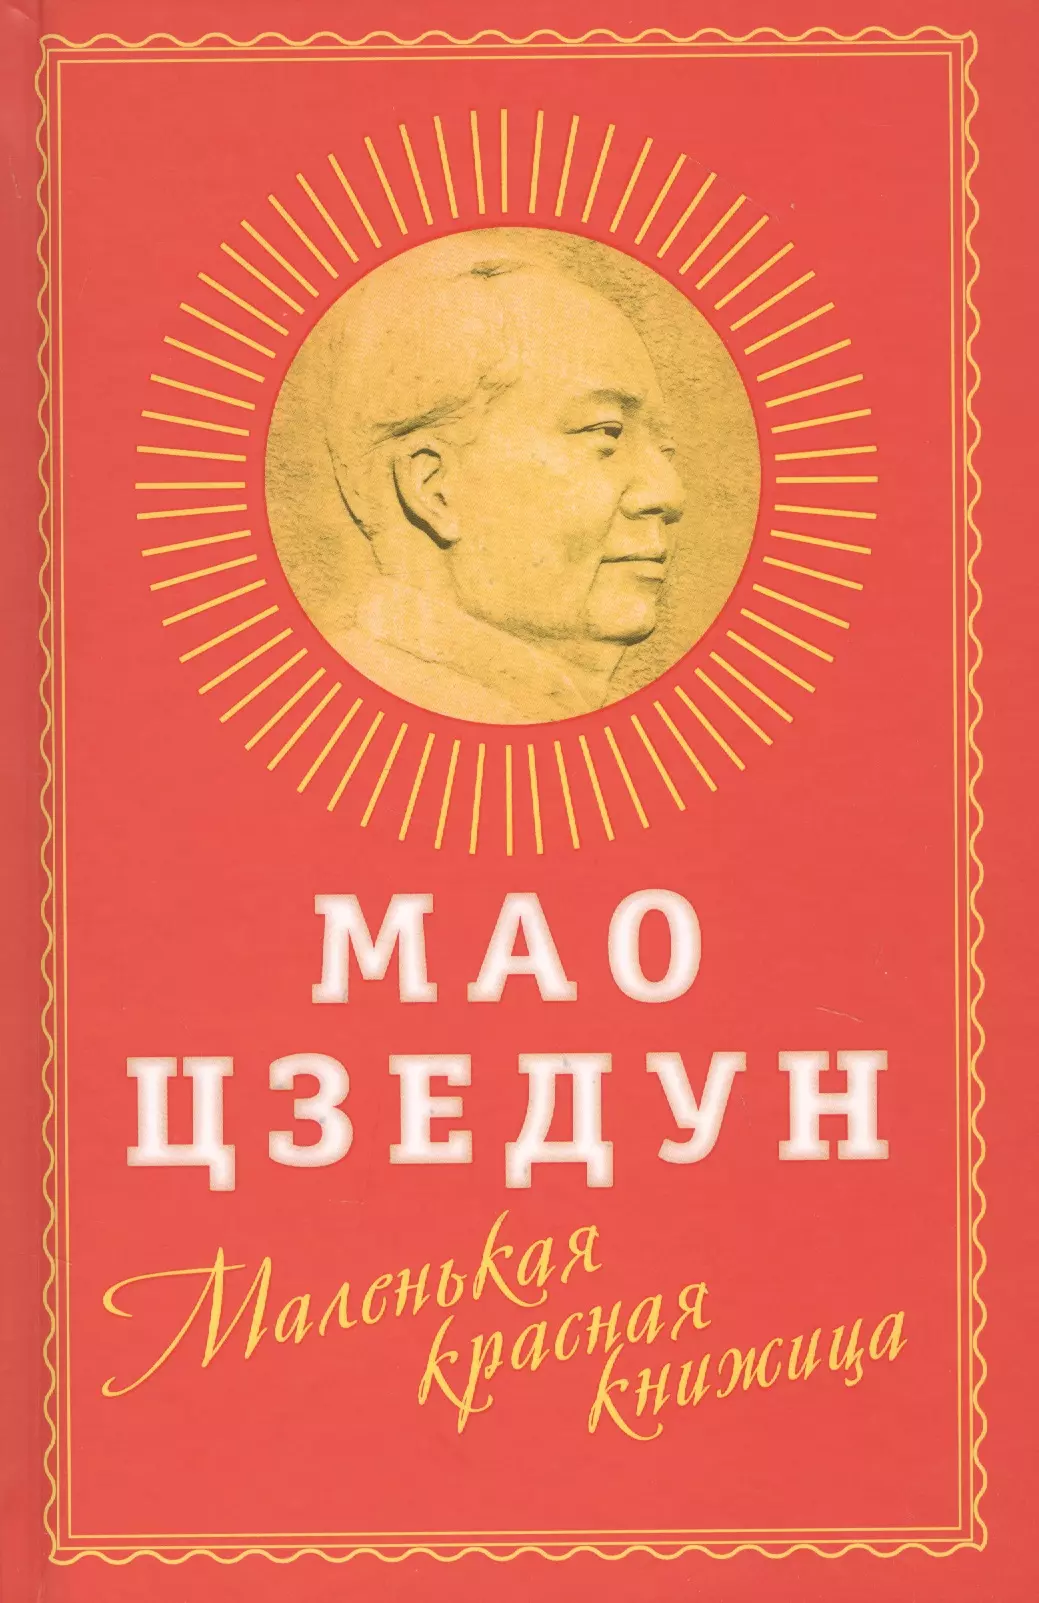 мин анчи стать мадам мао Мао Цзэдун Маленькая красная книжица